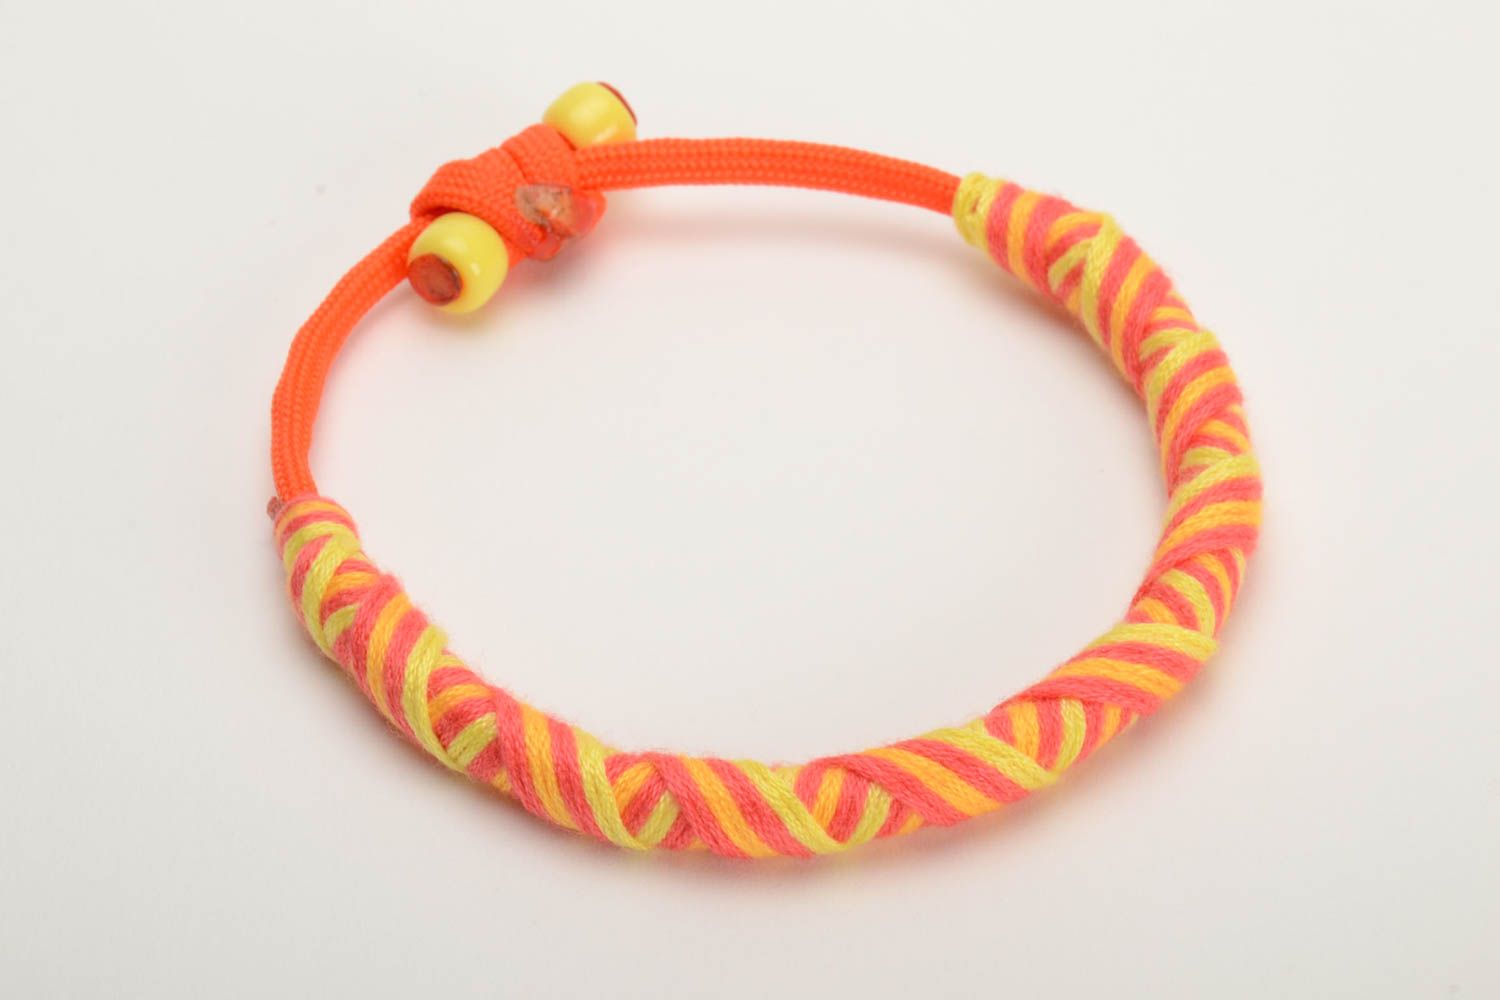 Handmade geflochtenes enges Armband aus Paracord orange gelb schön elegant foto 4